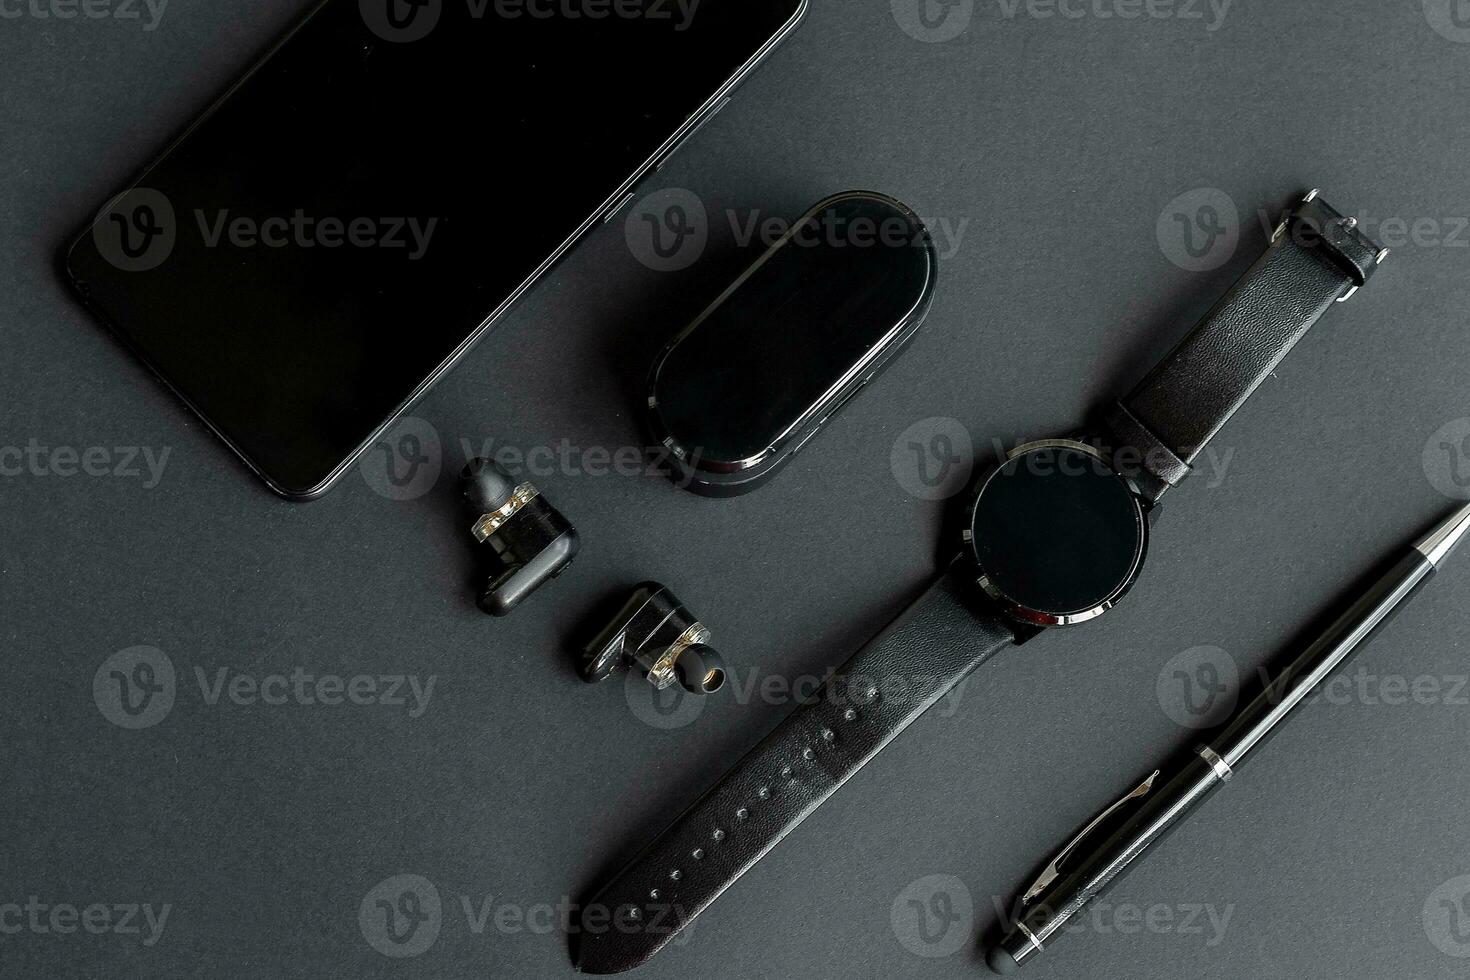 nero penna, nero inteligente guarda, smartphone, senza fili cuffie su buio sfondo foto